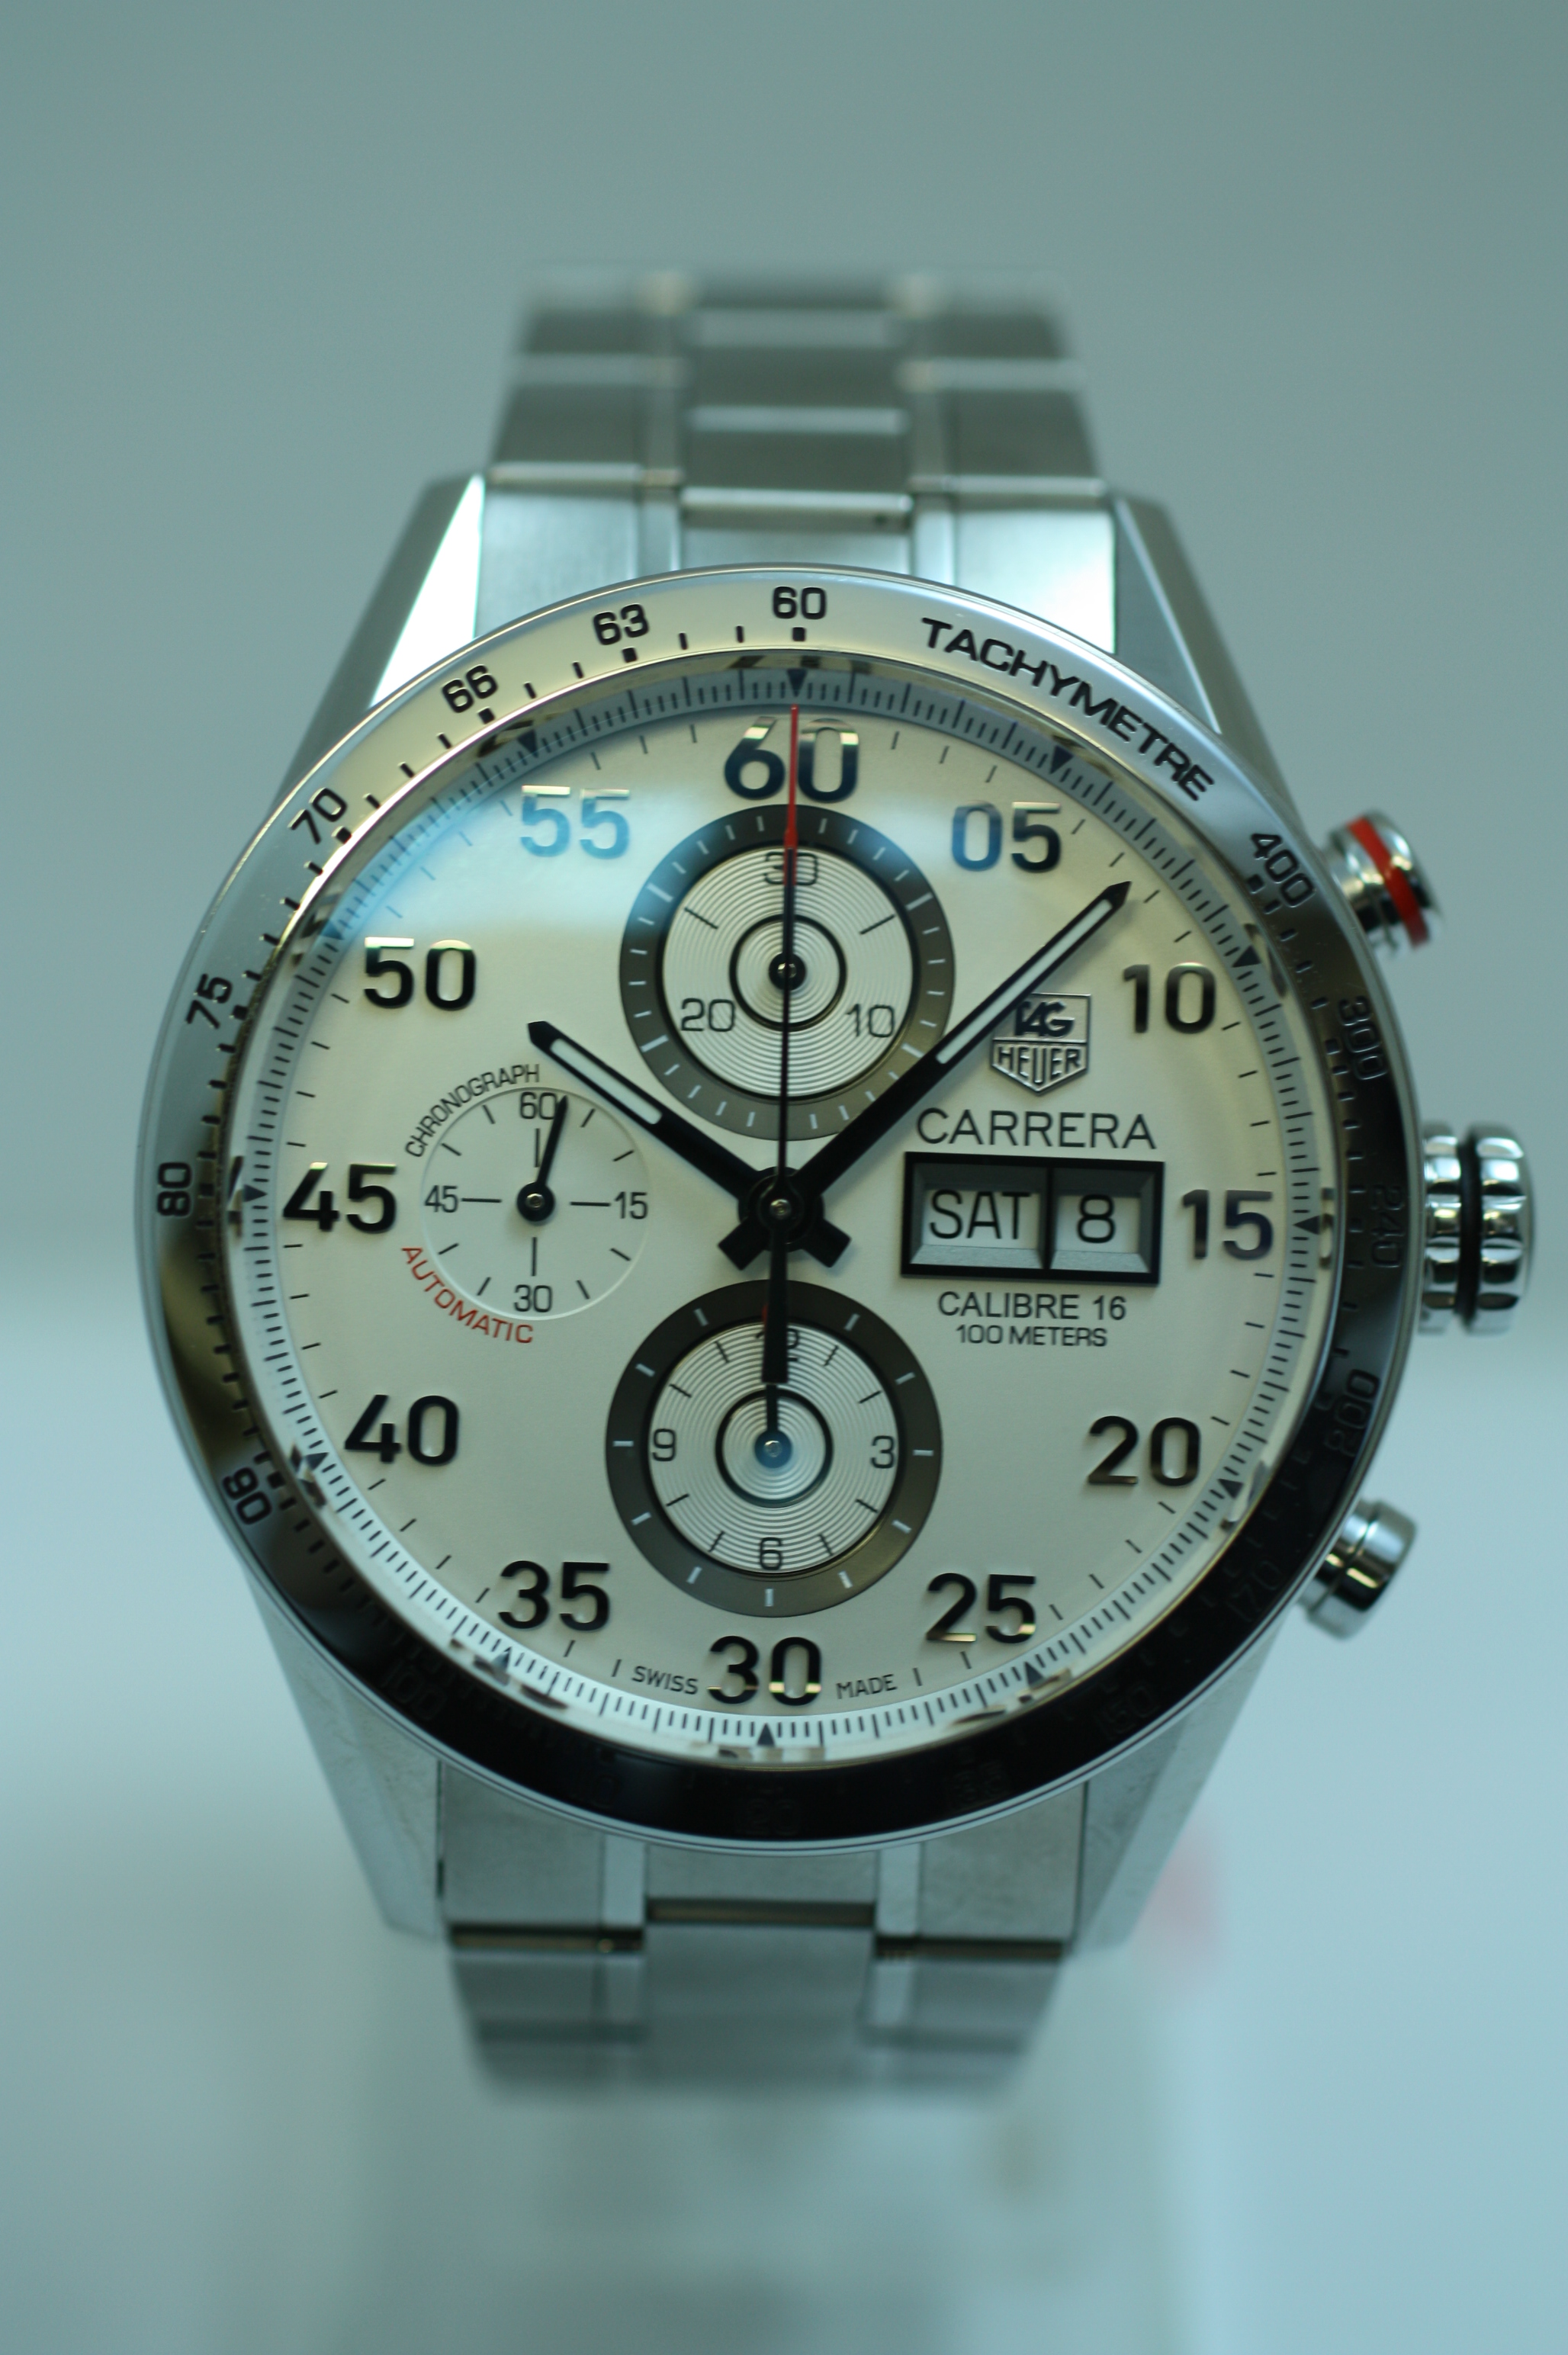 CV2A11.BA0796 タグホイヤー カレラ タキメーター クロノグラフ デイデイト の買取価格 - 高級ブランド腕時計の買取・査定なら